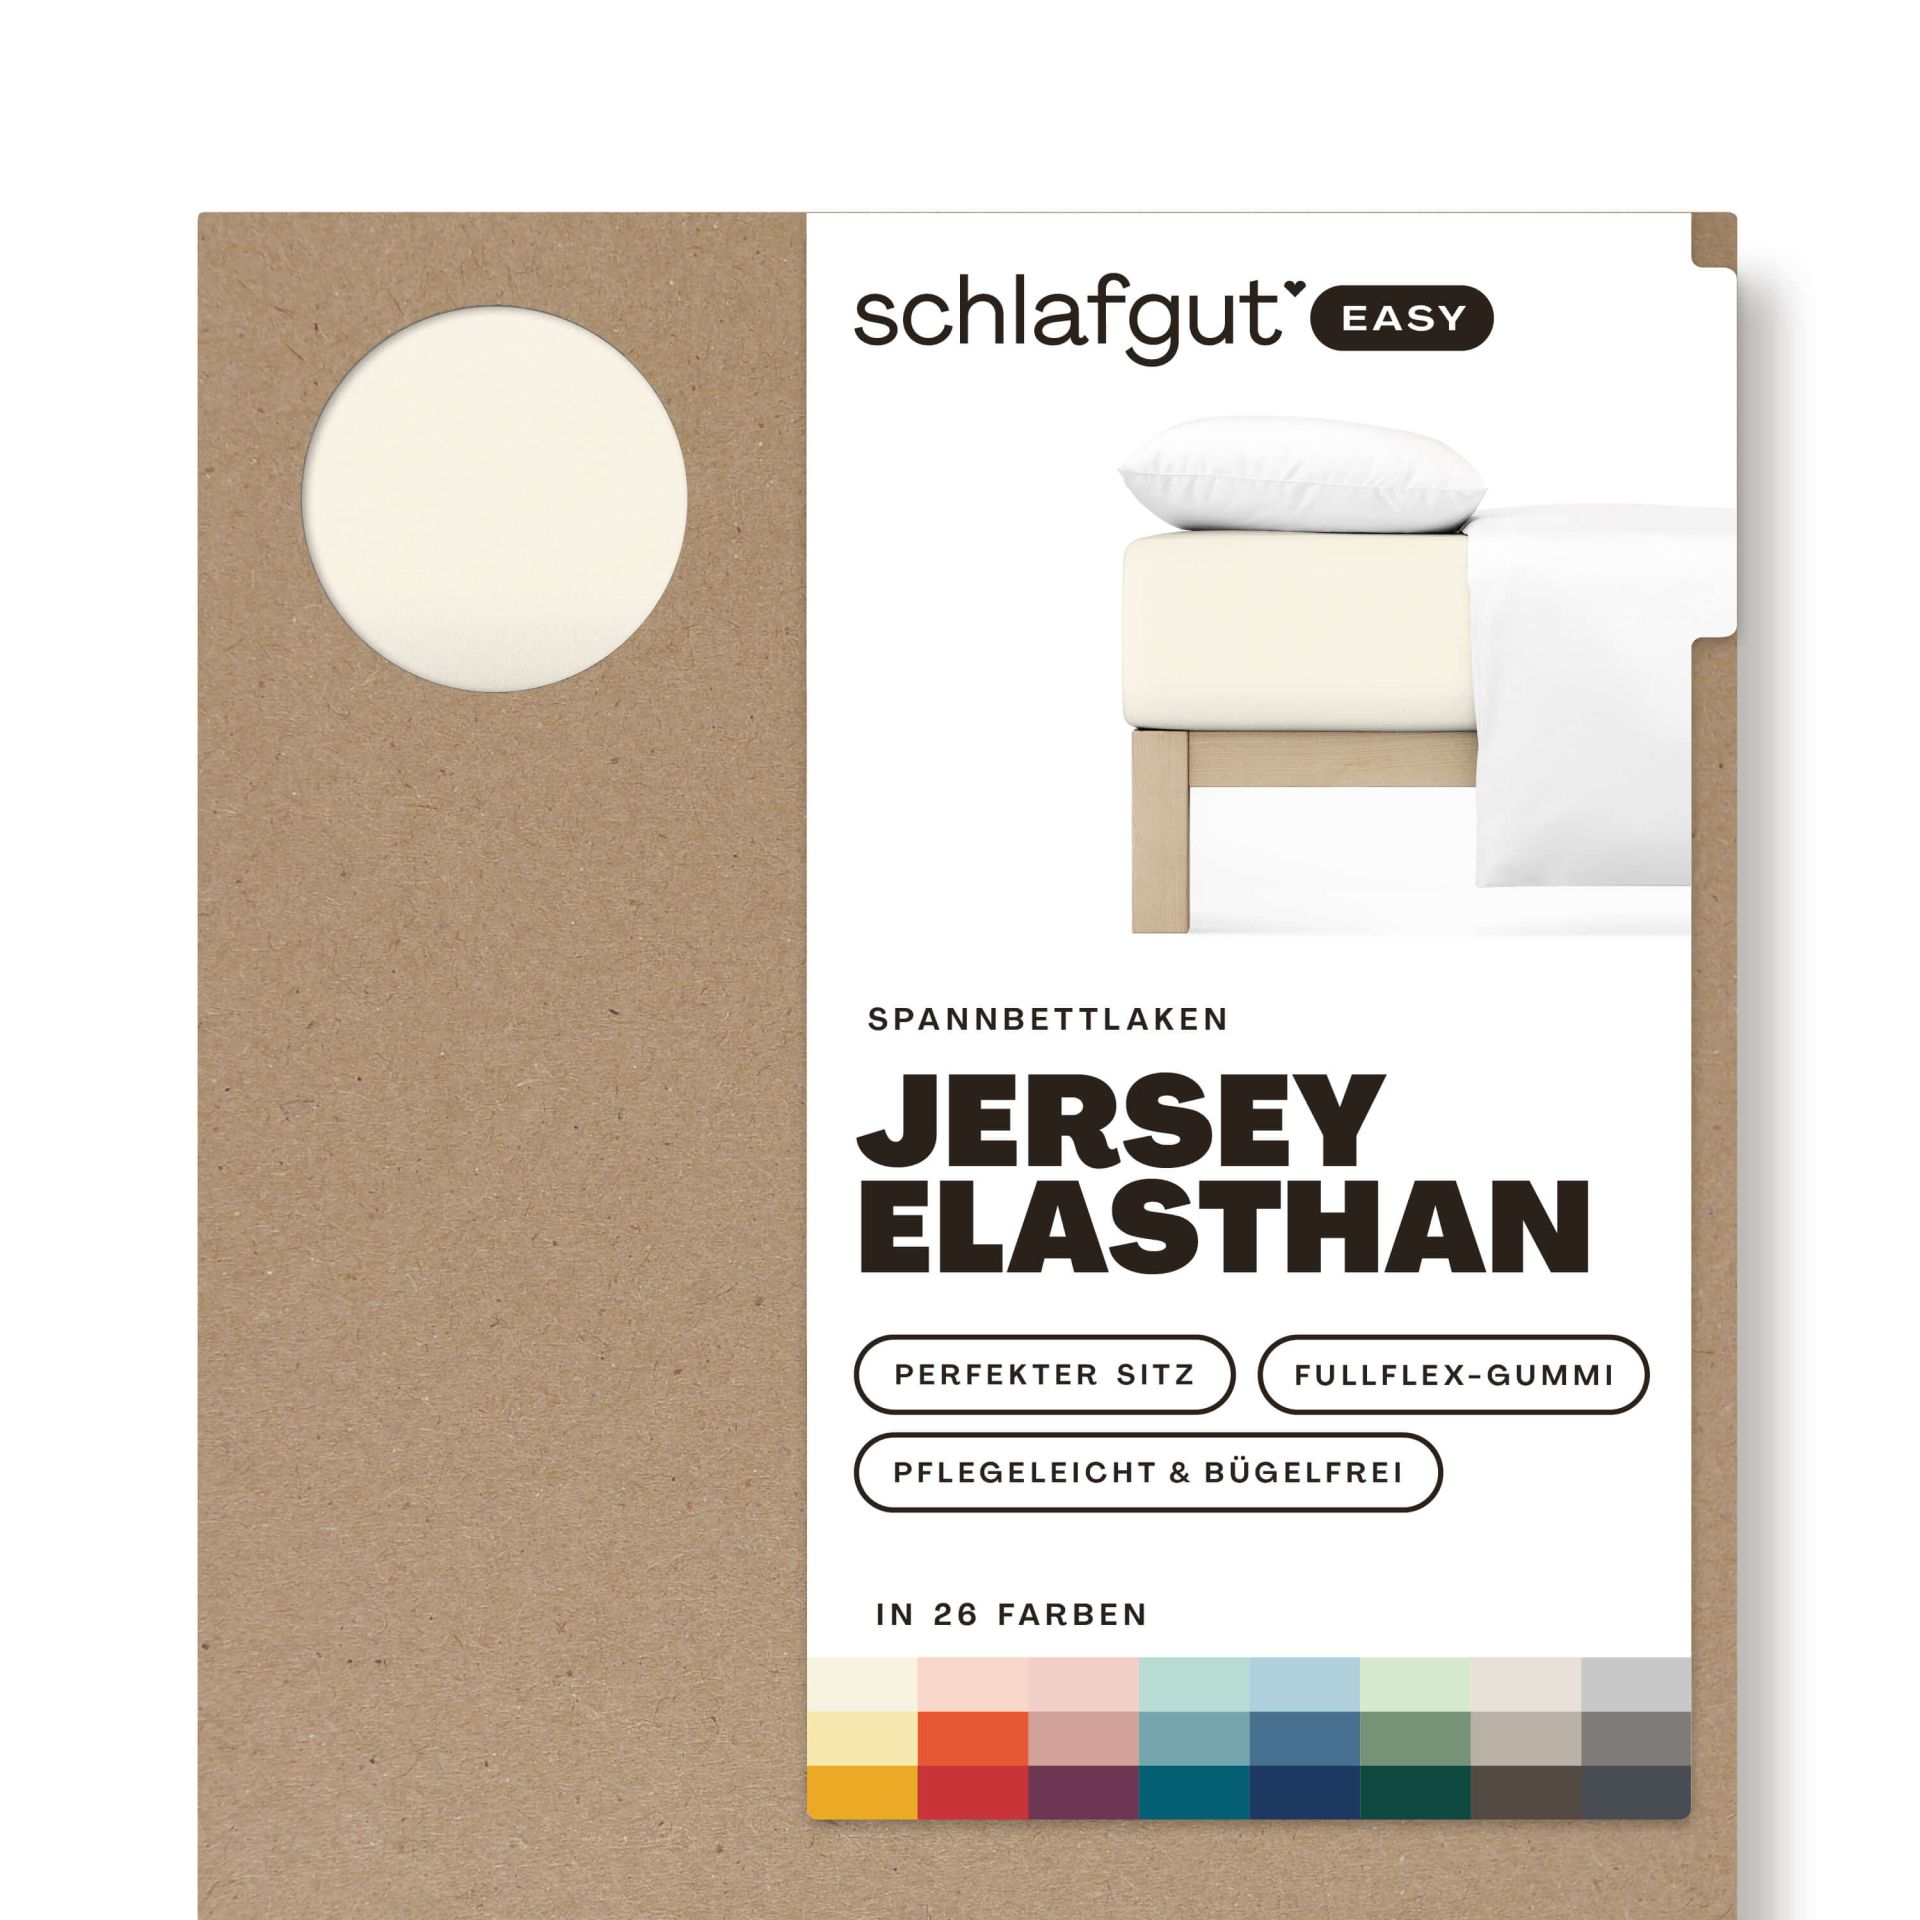 Das Produktbild vom Spannbettlaken der Reihe Easy Elasthan in Farbe yellow light von Schlafgut